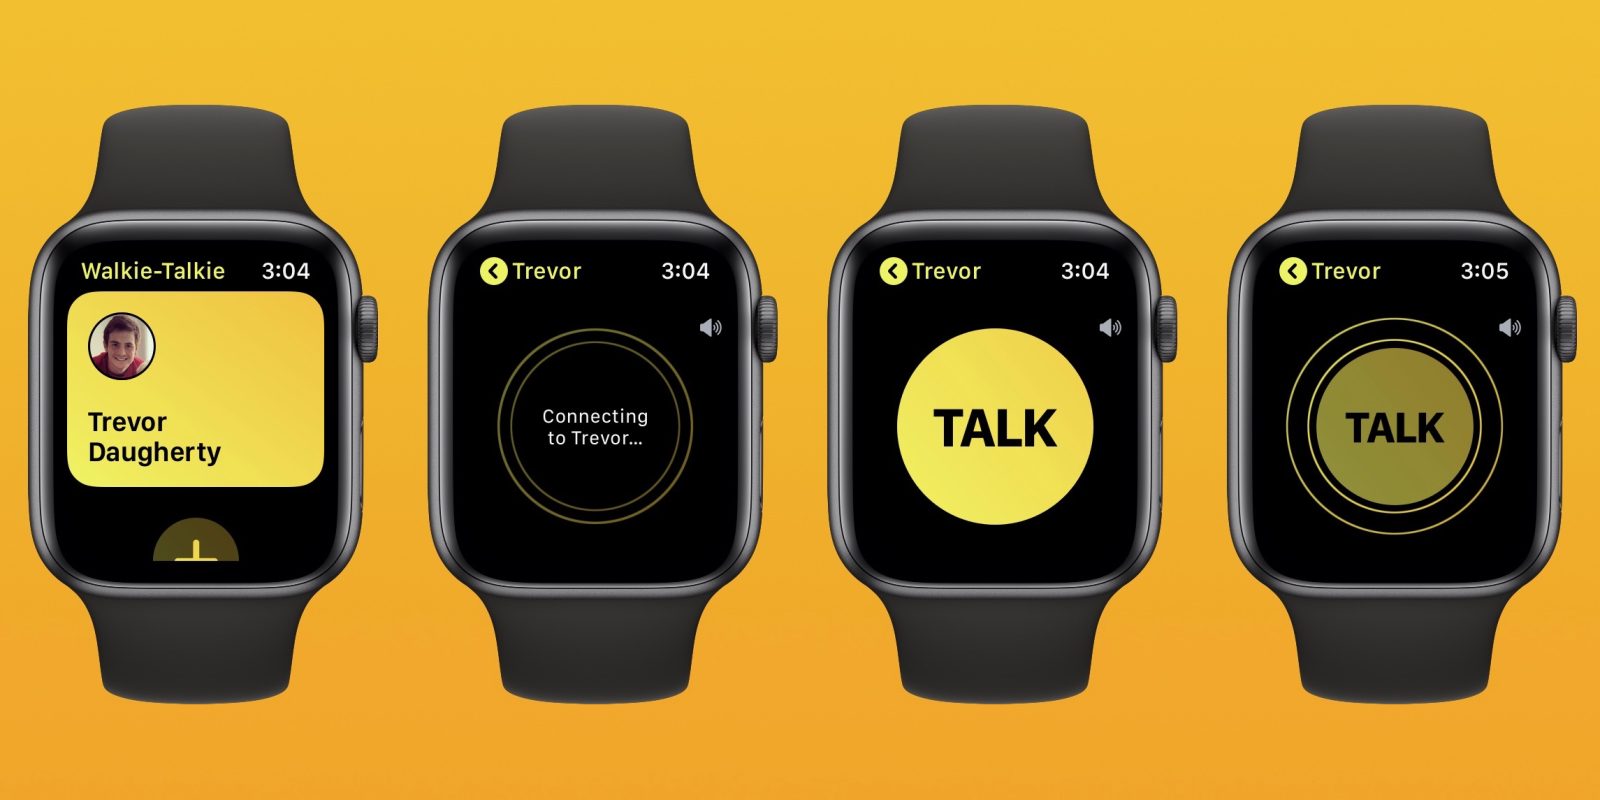 tap to talk Apple Watch walkie-talkie